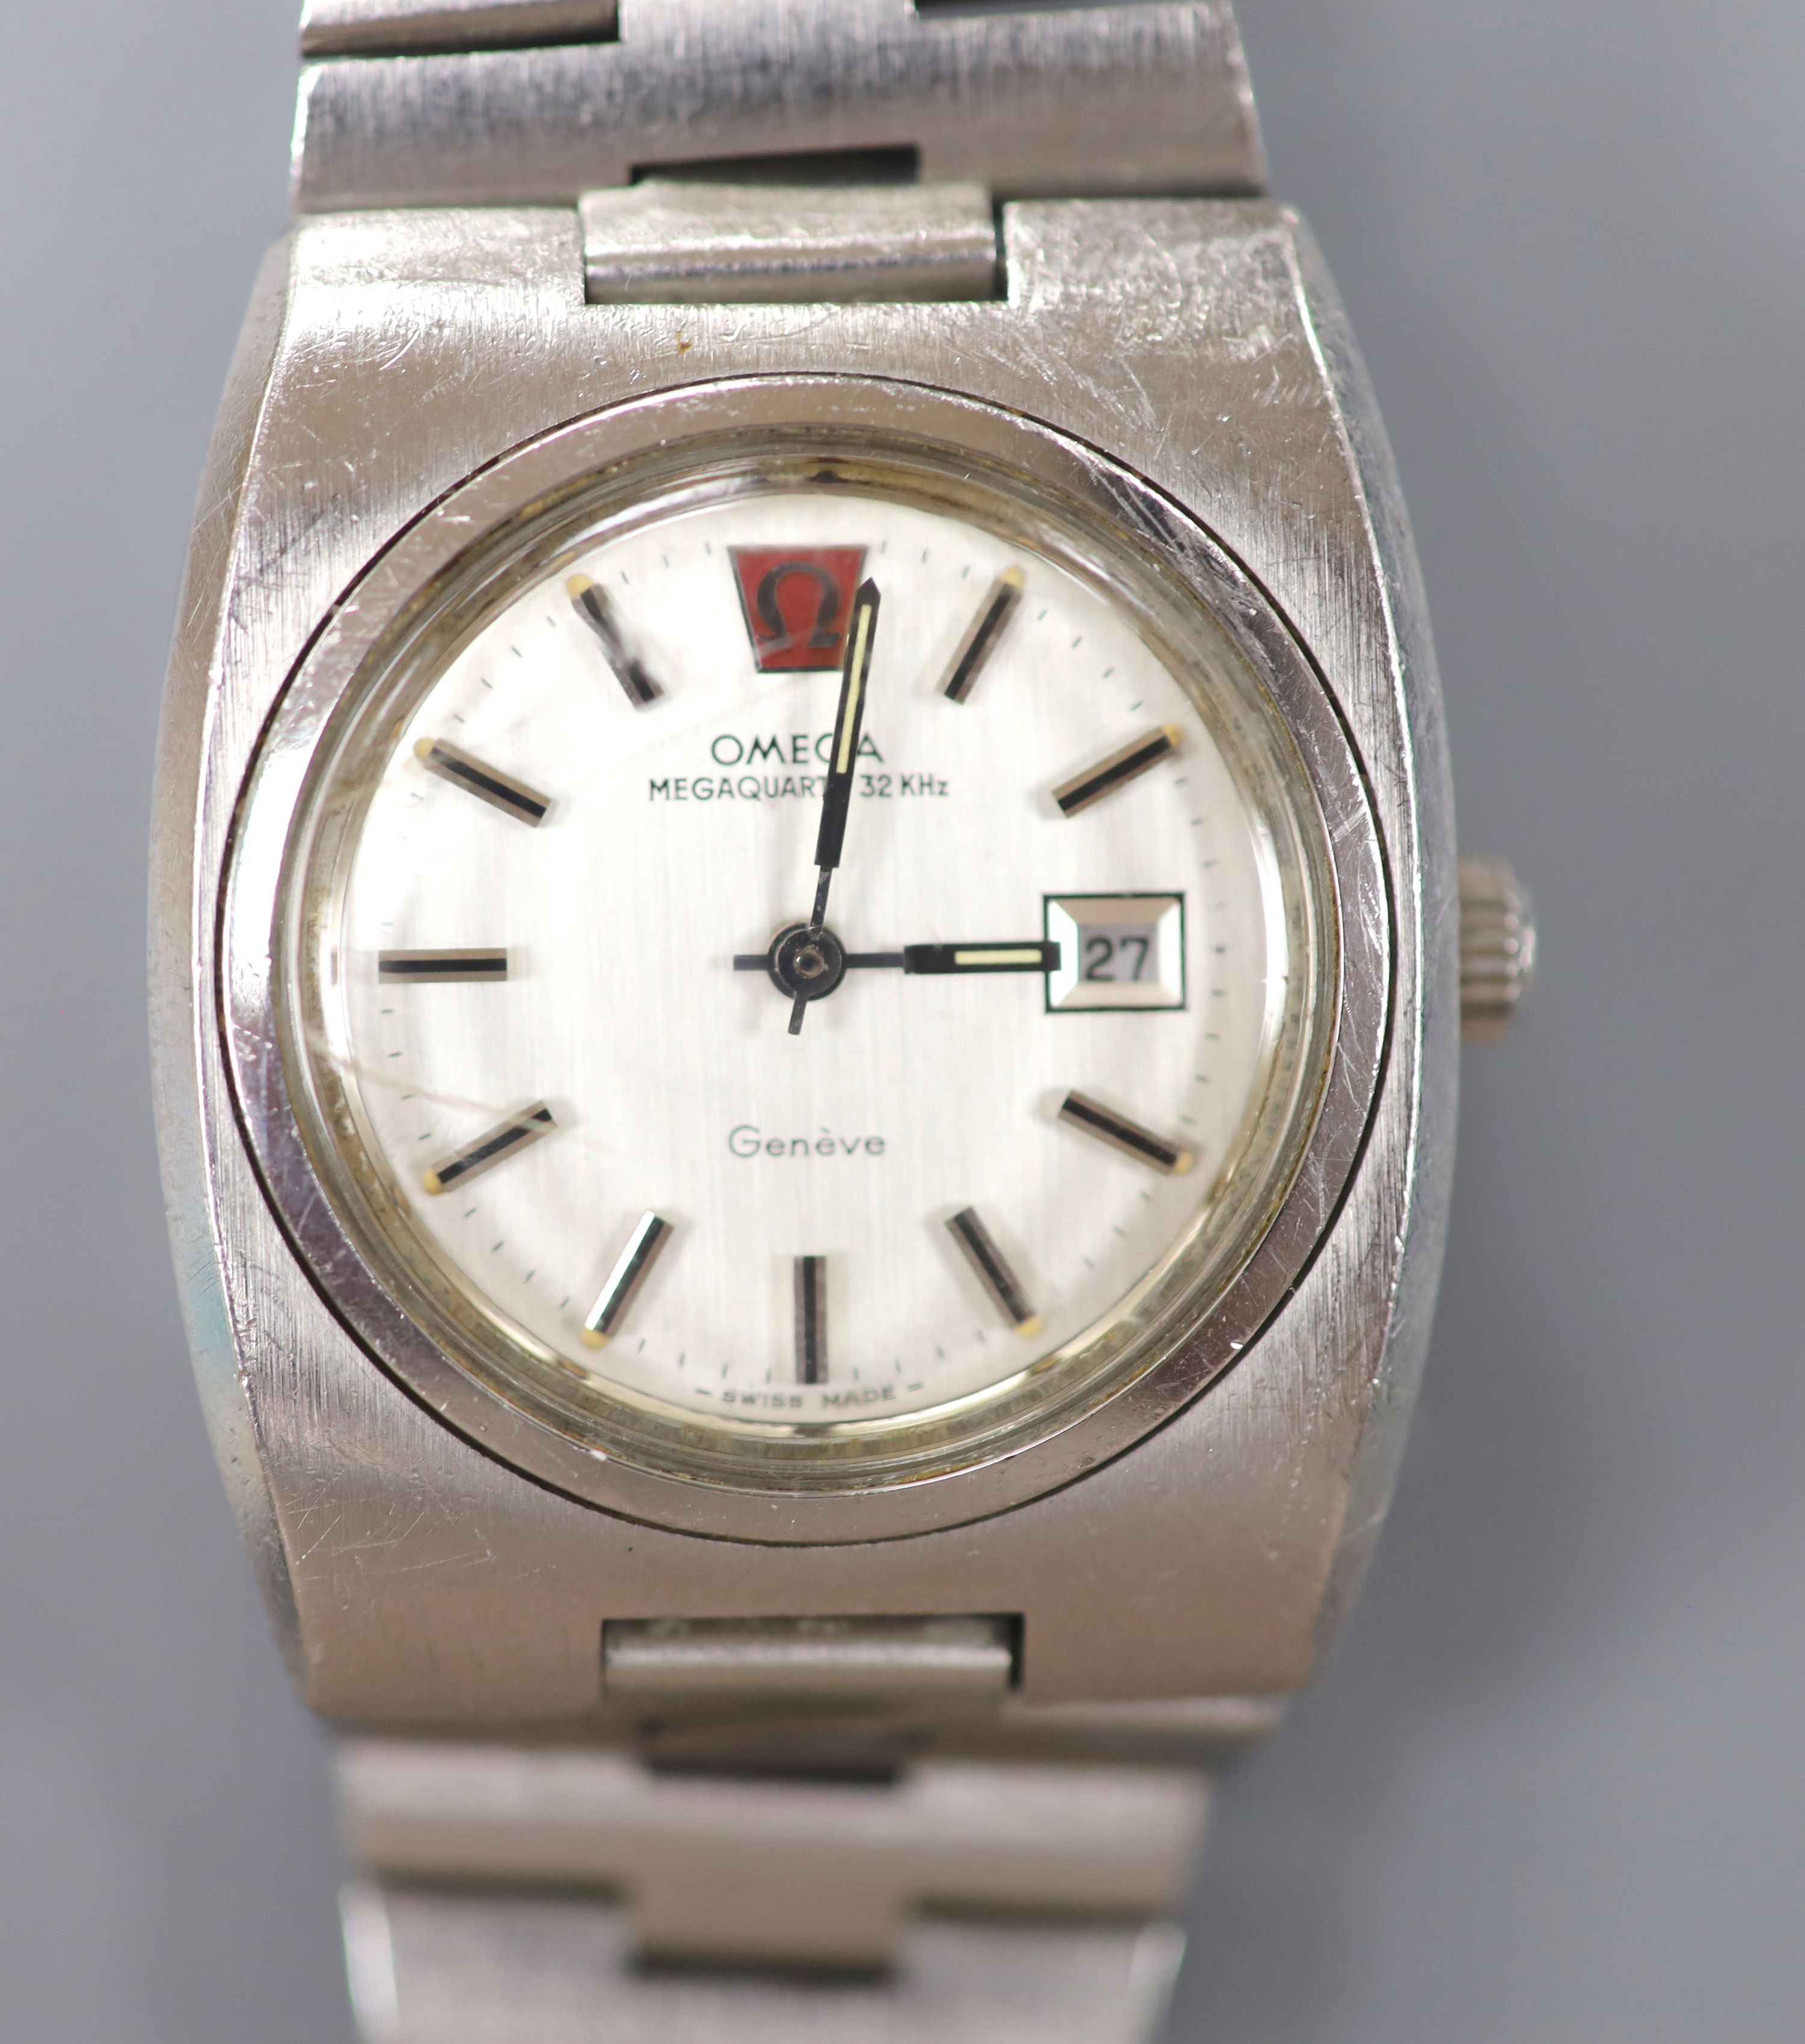 A gentleman's stainless steel Omega Megaquartz 32KHz wrist watch, on stainless steel Omega bracelet, case diameter 31mm.